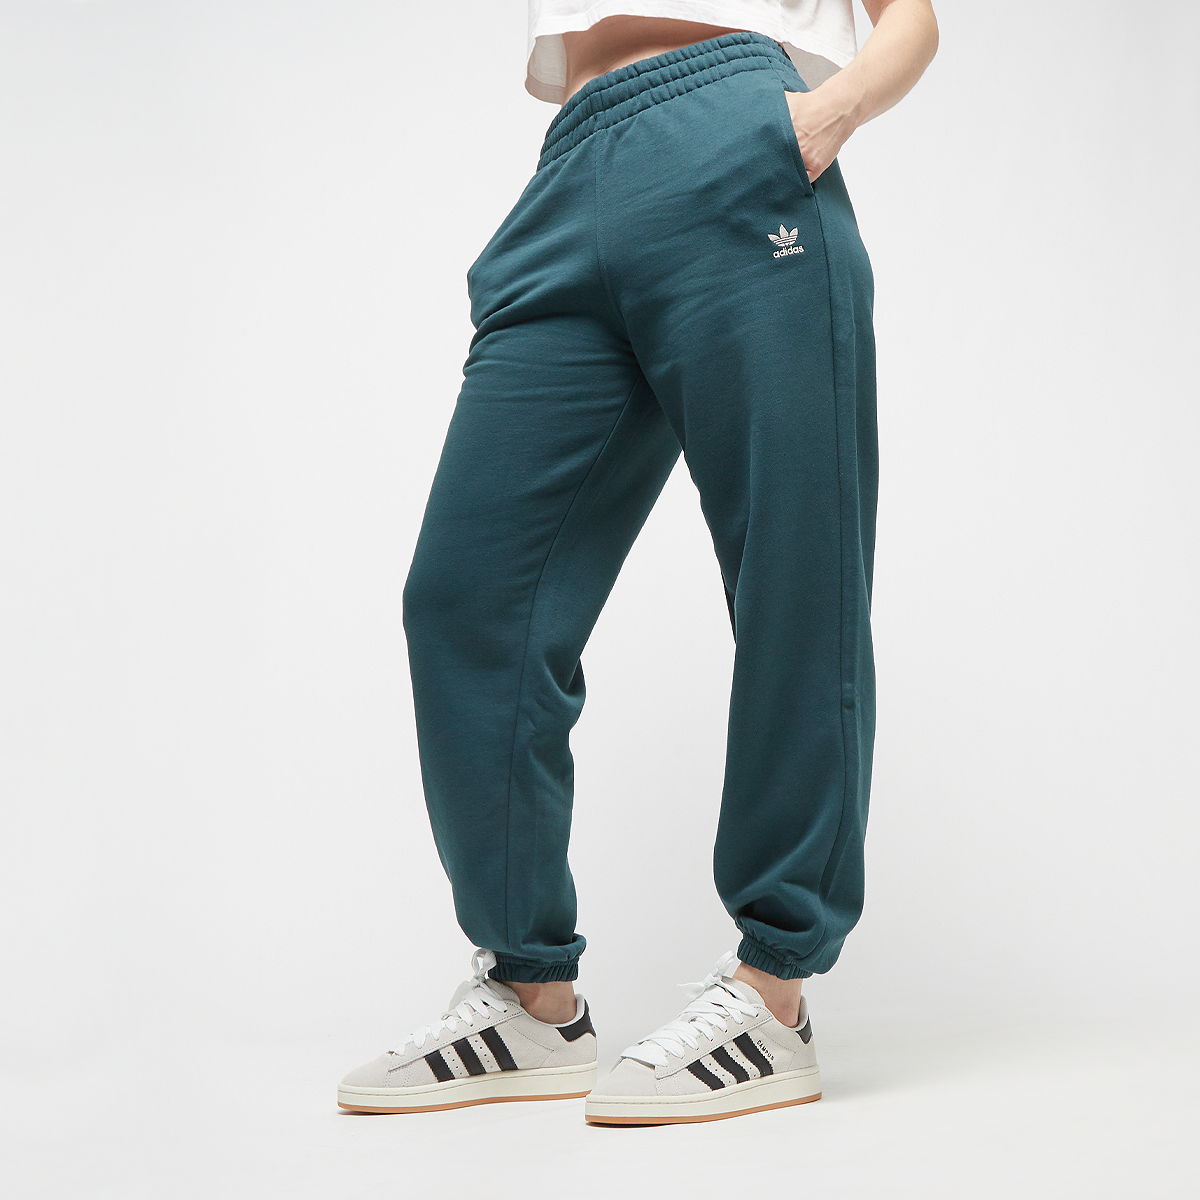 Adidas Originals Essentials Jogging Broek Trainingsbroeken Kleding arctic night maat: L beschikbare maaten:XS S M L